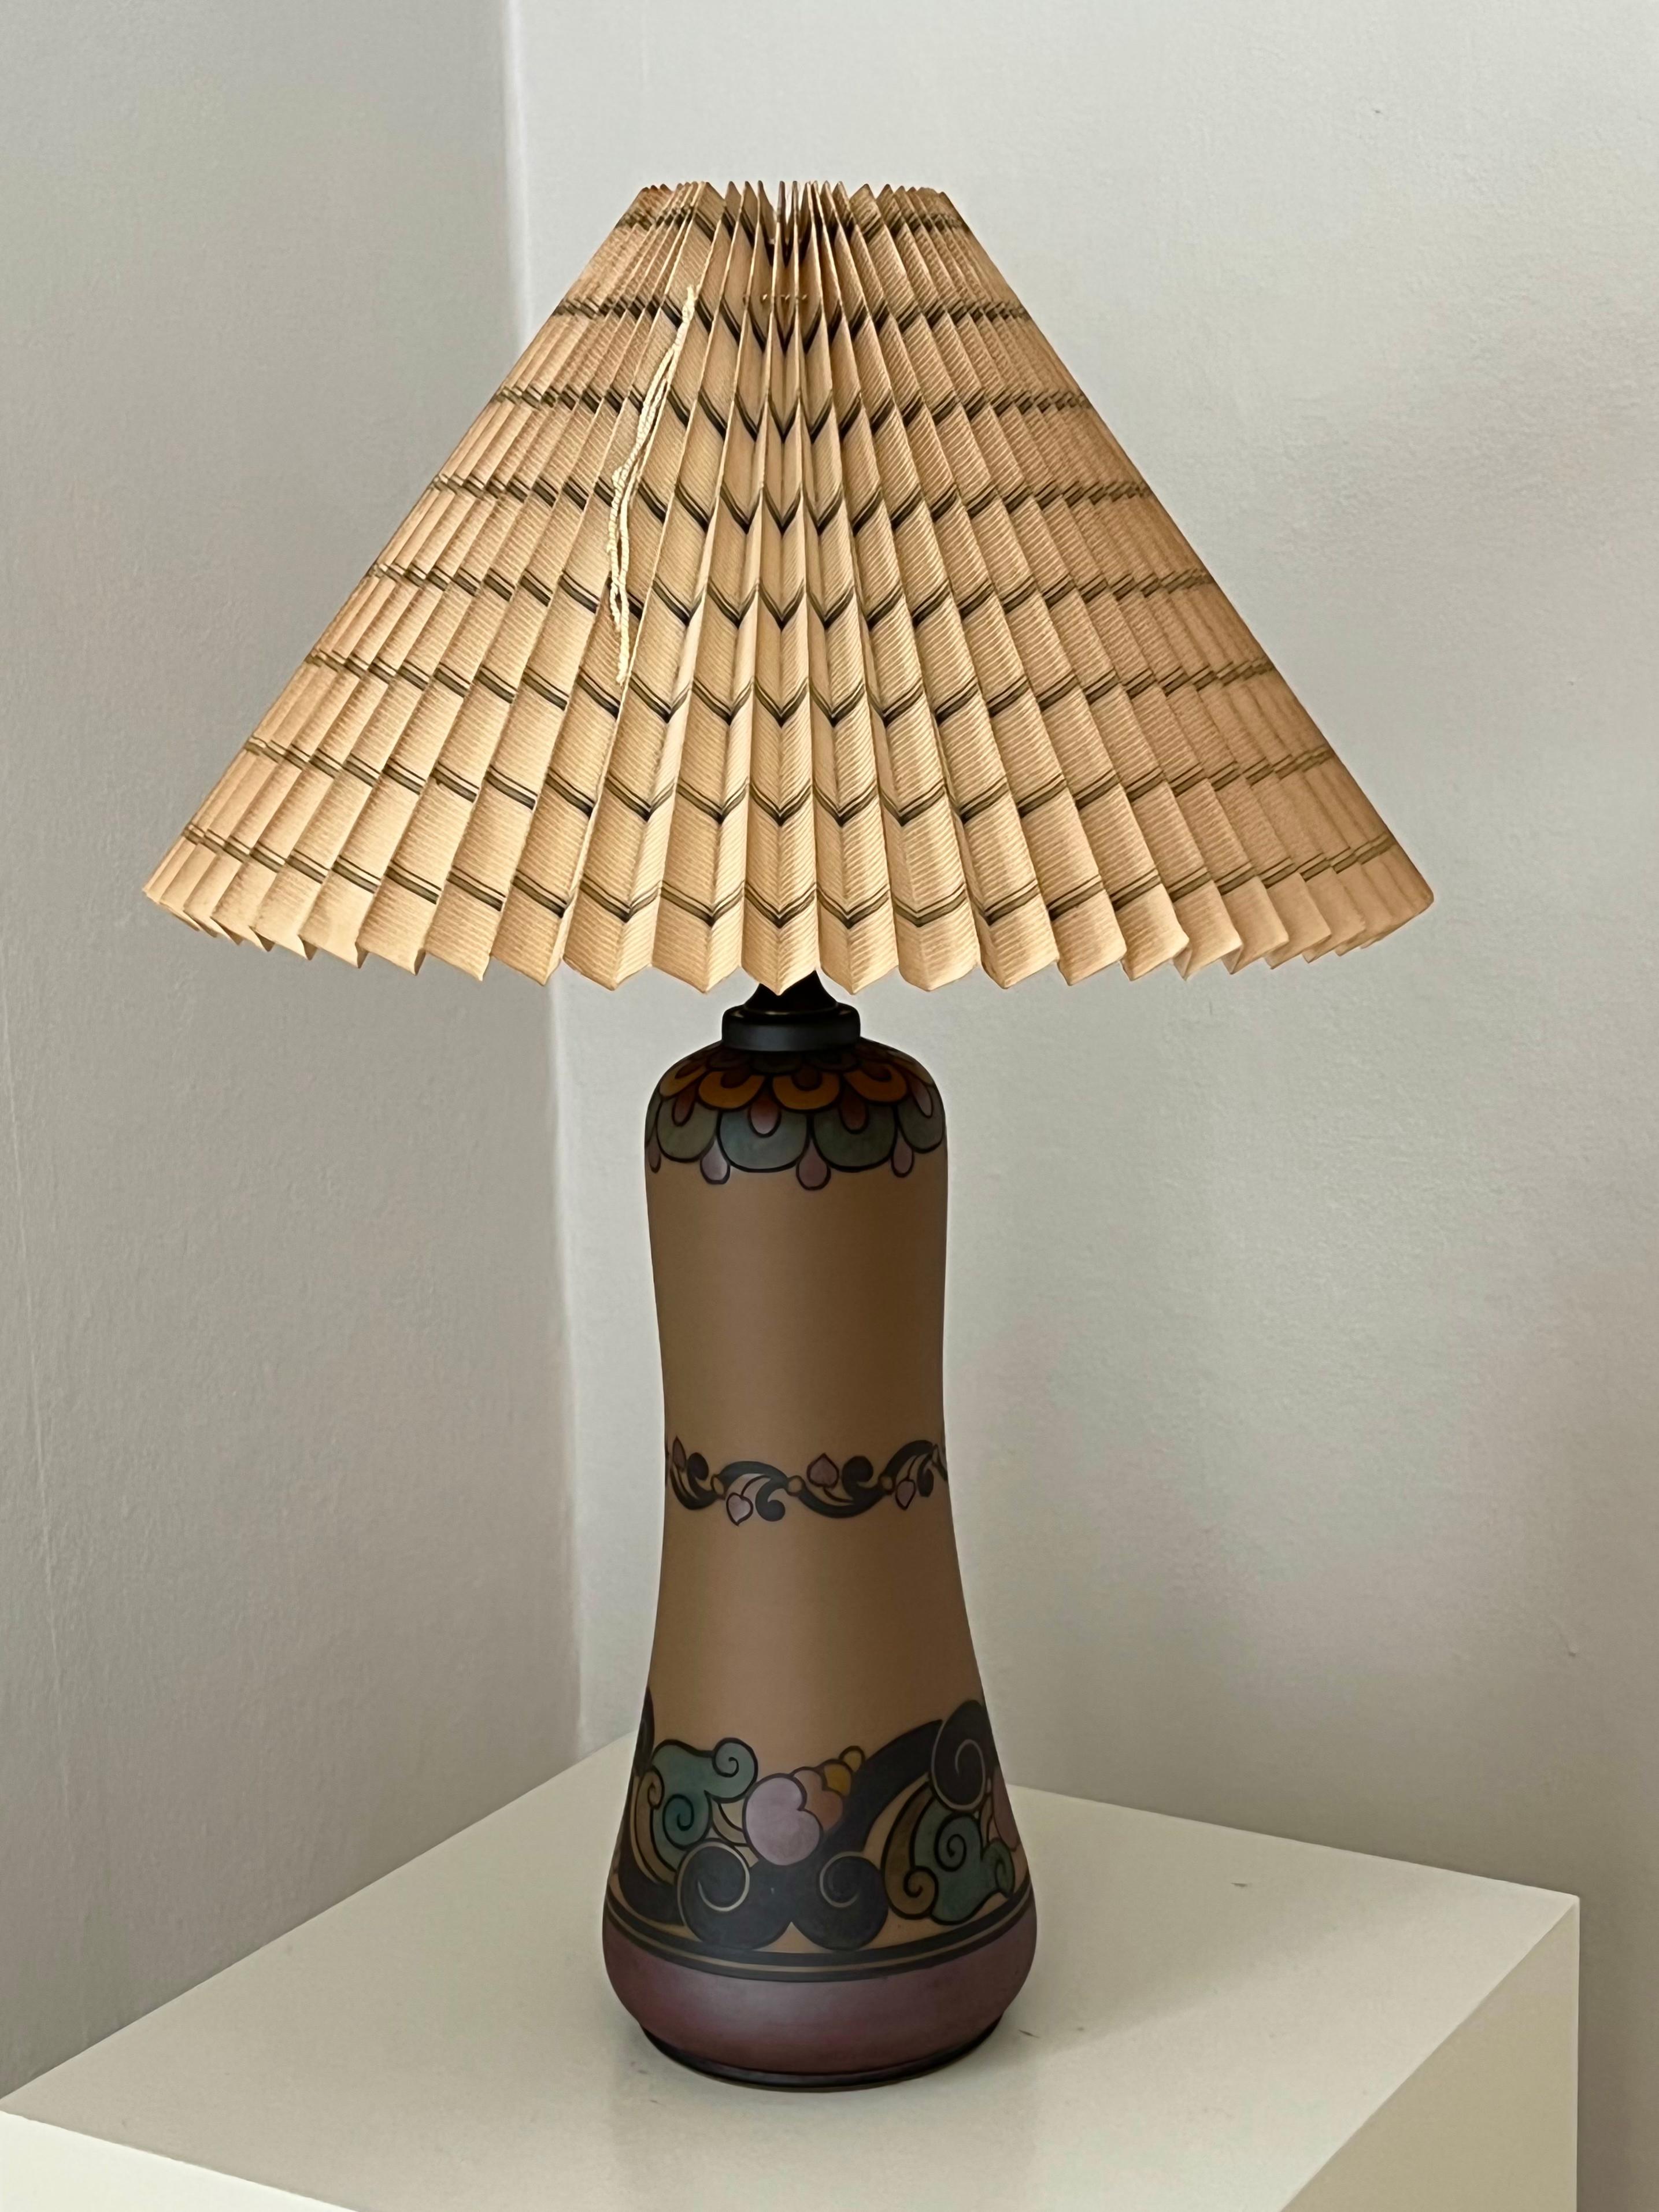 Cette grande lampe de table Art nouveau en céramique danoise est décorée à la main et fabriquée par l'usine de céramique I.L.A. sur l'île danoise de Bornholm, réputée pour ses ateliers de céramique exceptionnels. Décoré à la main d'un motif